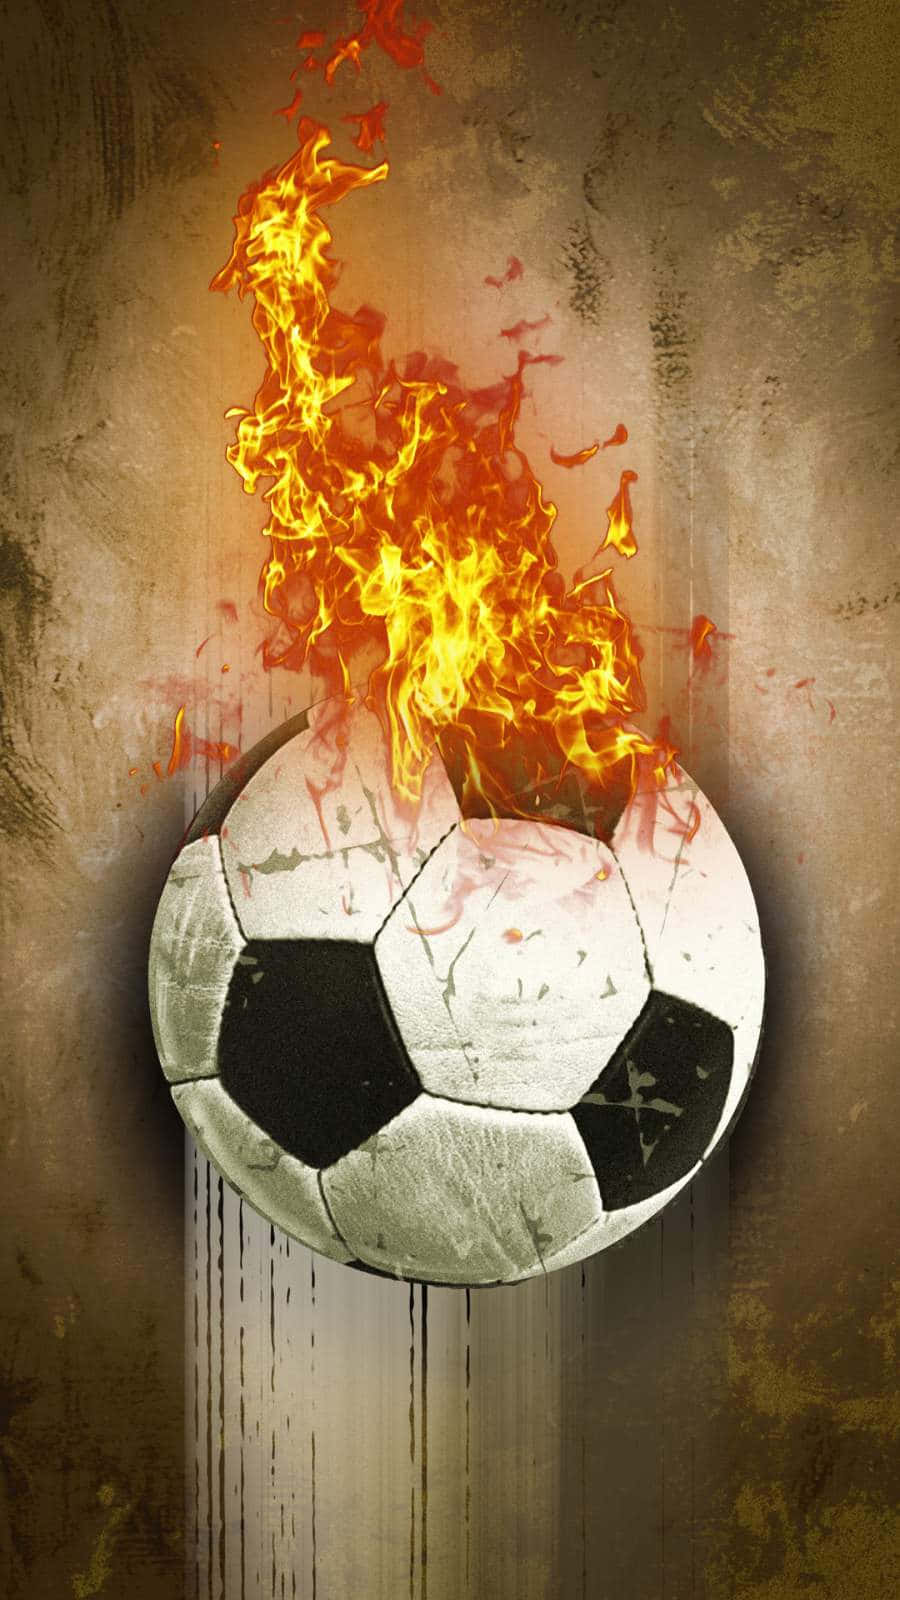 Einfußball Steht In Flammen, Mit Einer Flamme Darauf